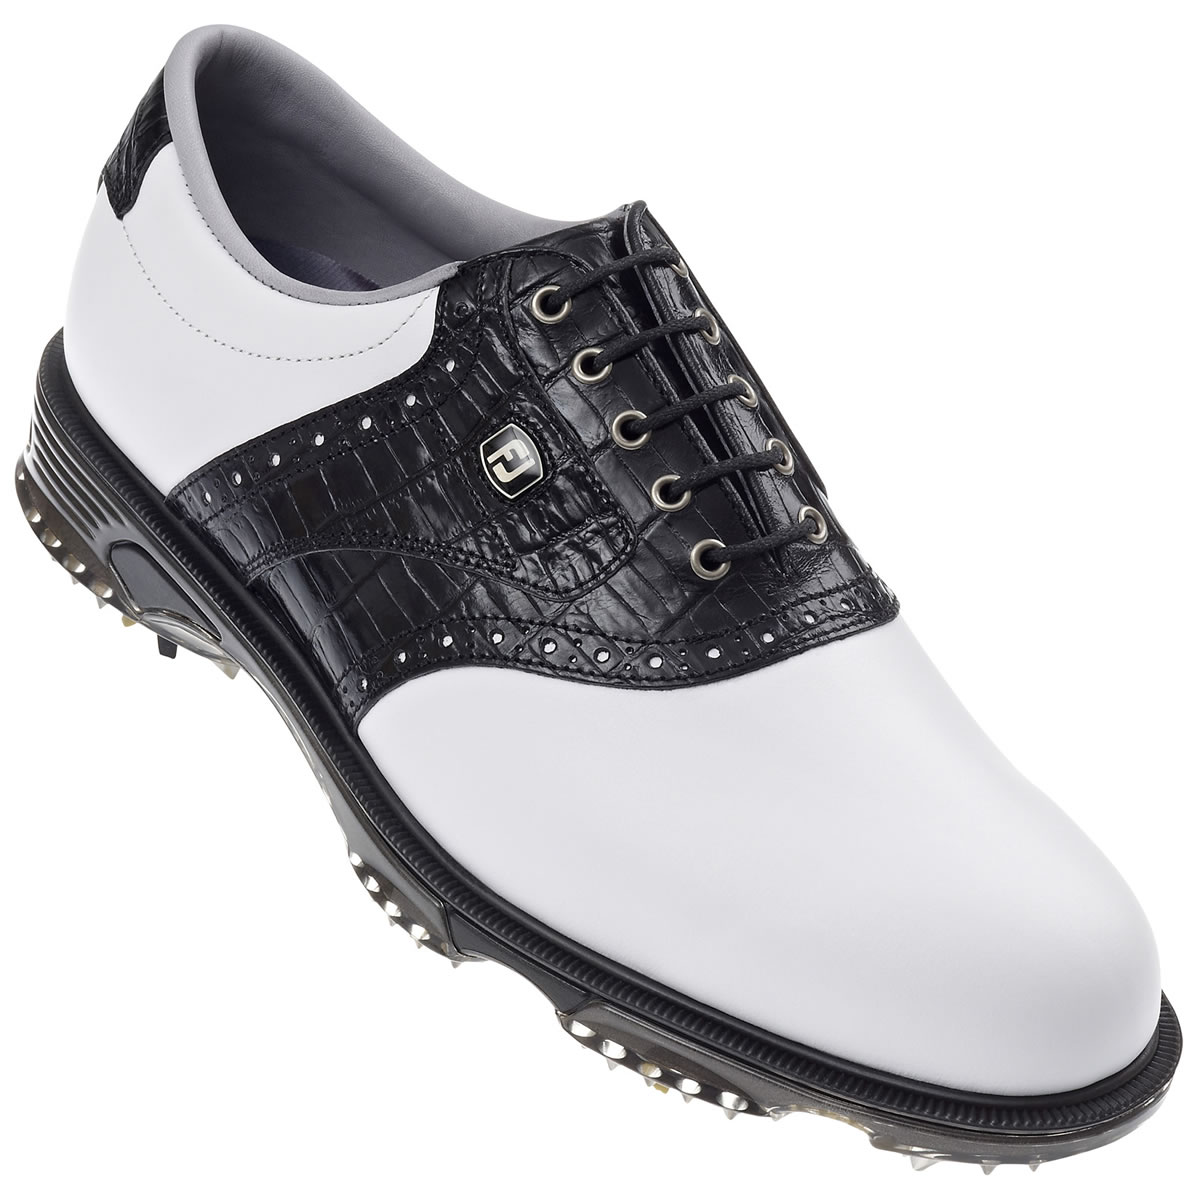 FootJoy DryJoys Tour Golf Shoes White/Black #53767